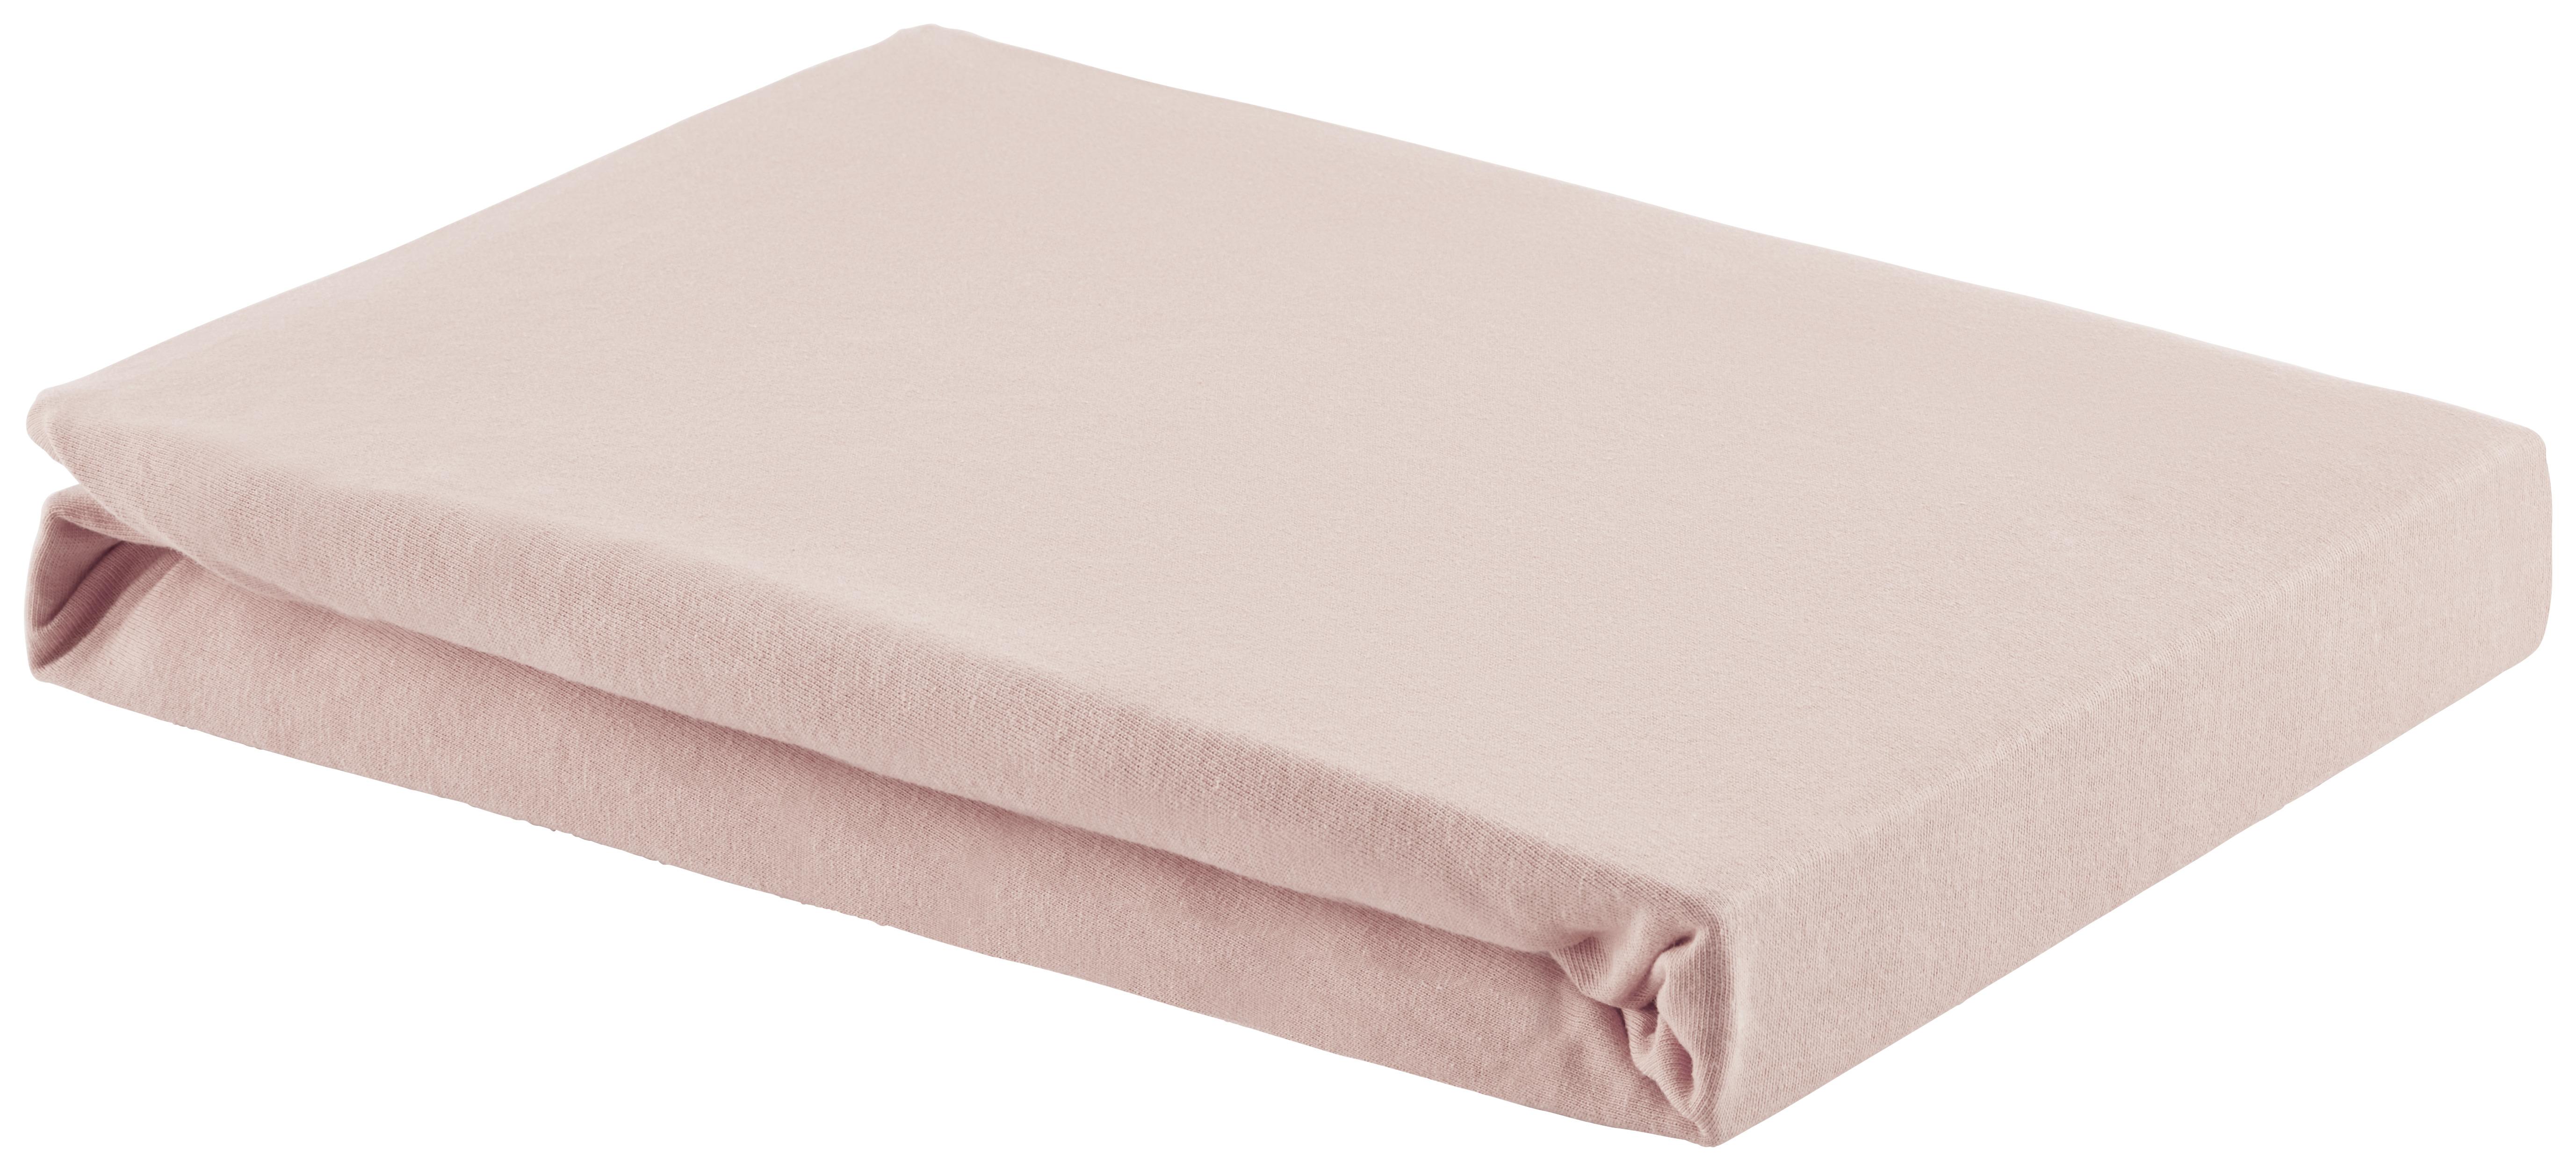 Elastické Prostěradlo Basic, 180/200cm, Růžová - růžová, textil (180/200cm) - Modern Living